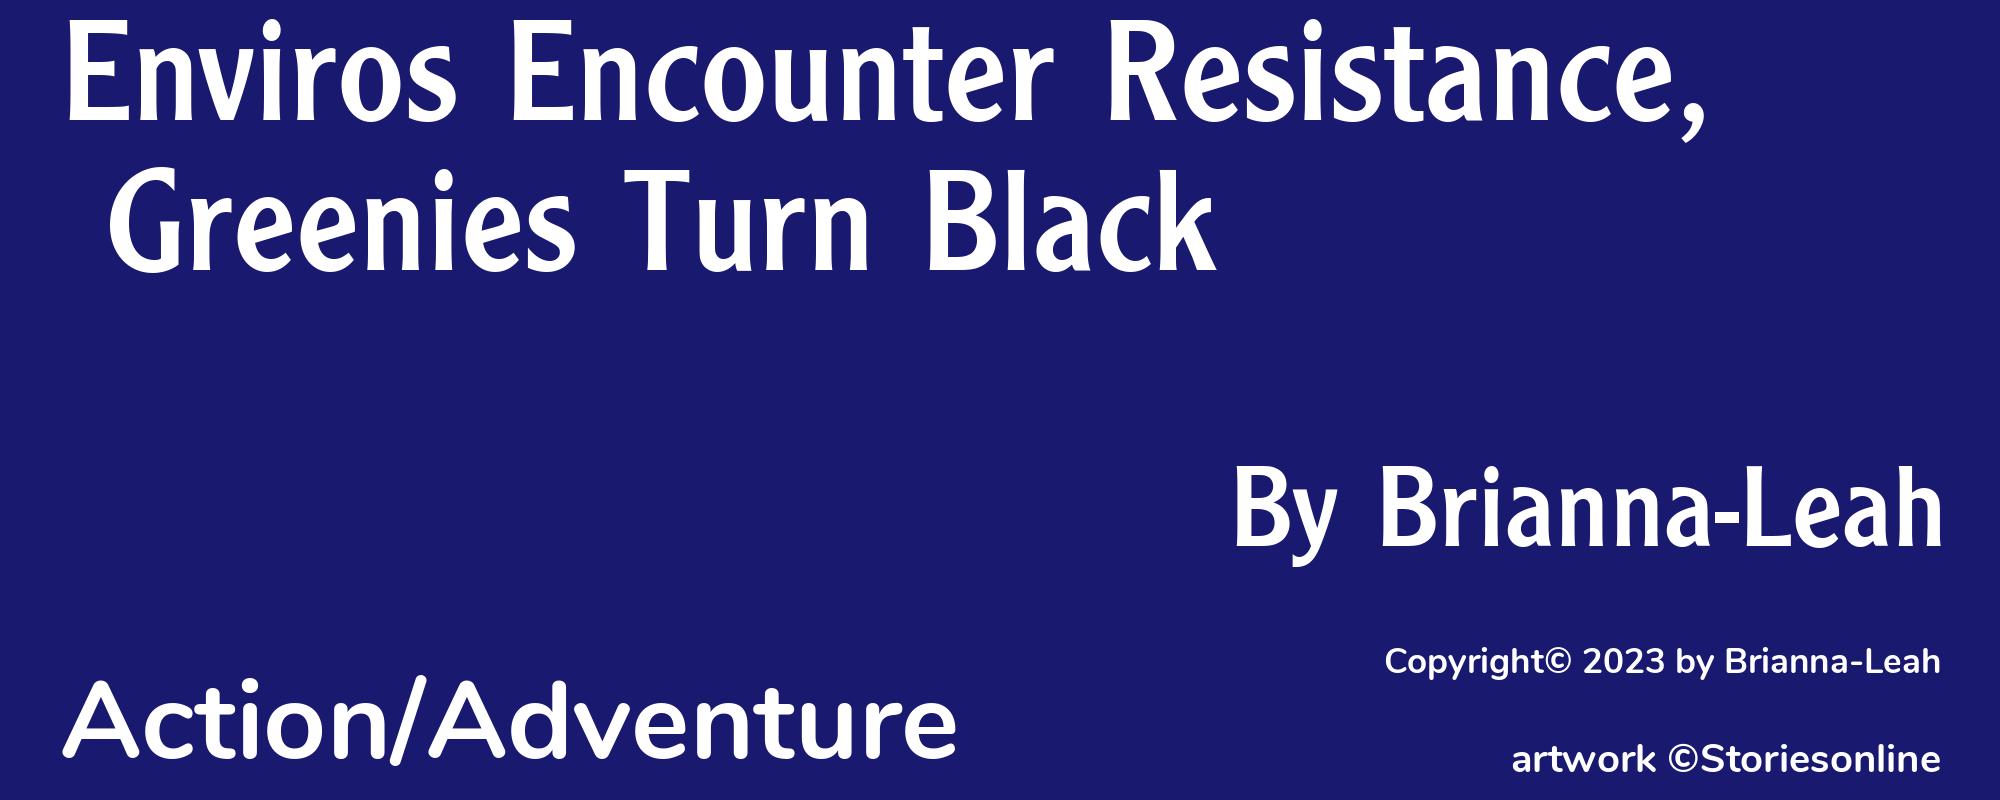 Enviros Encounter Resistance, Greenies Turn Black - Cover